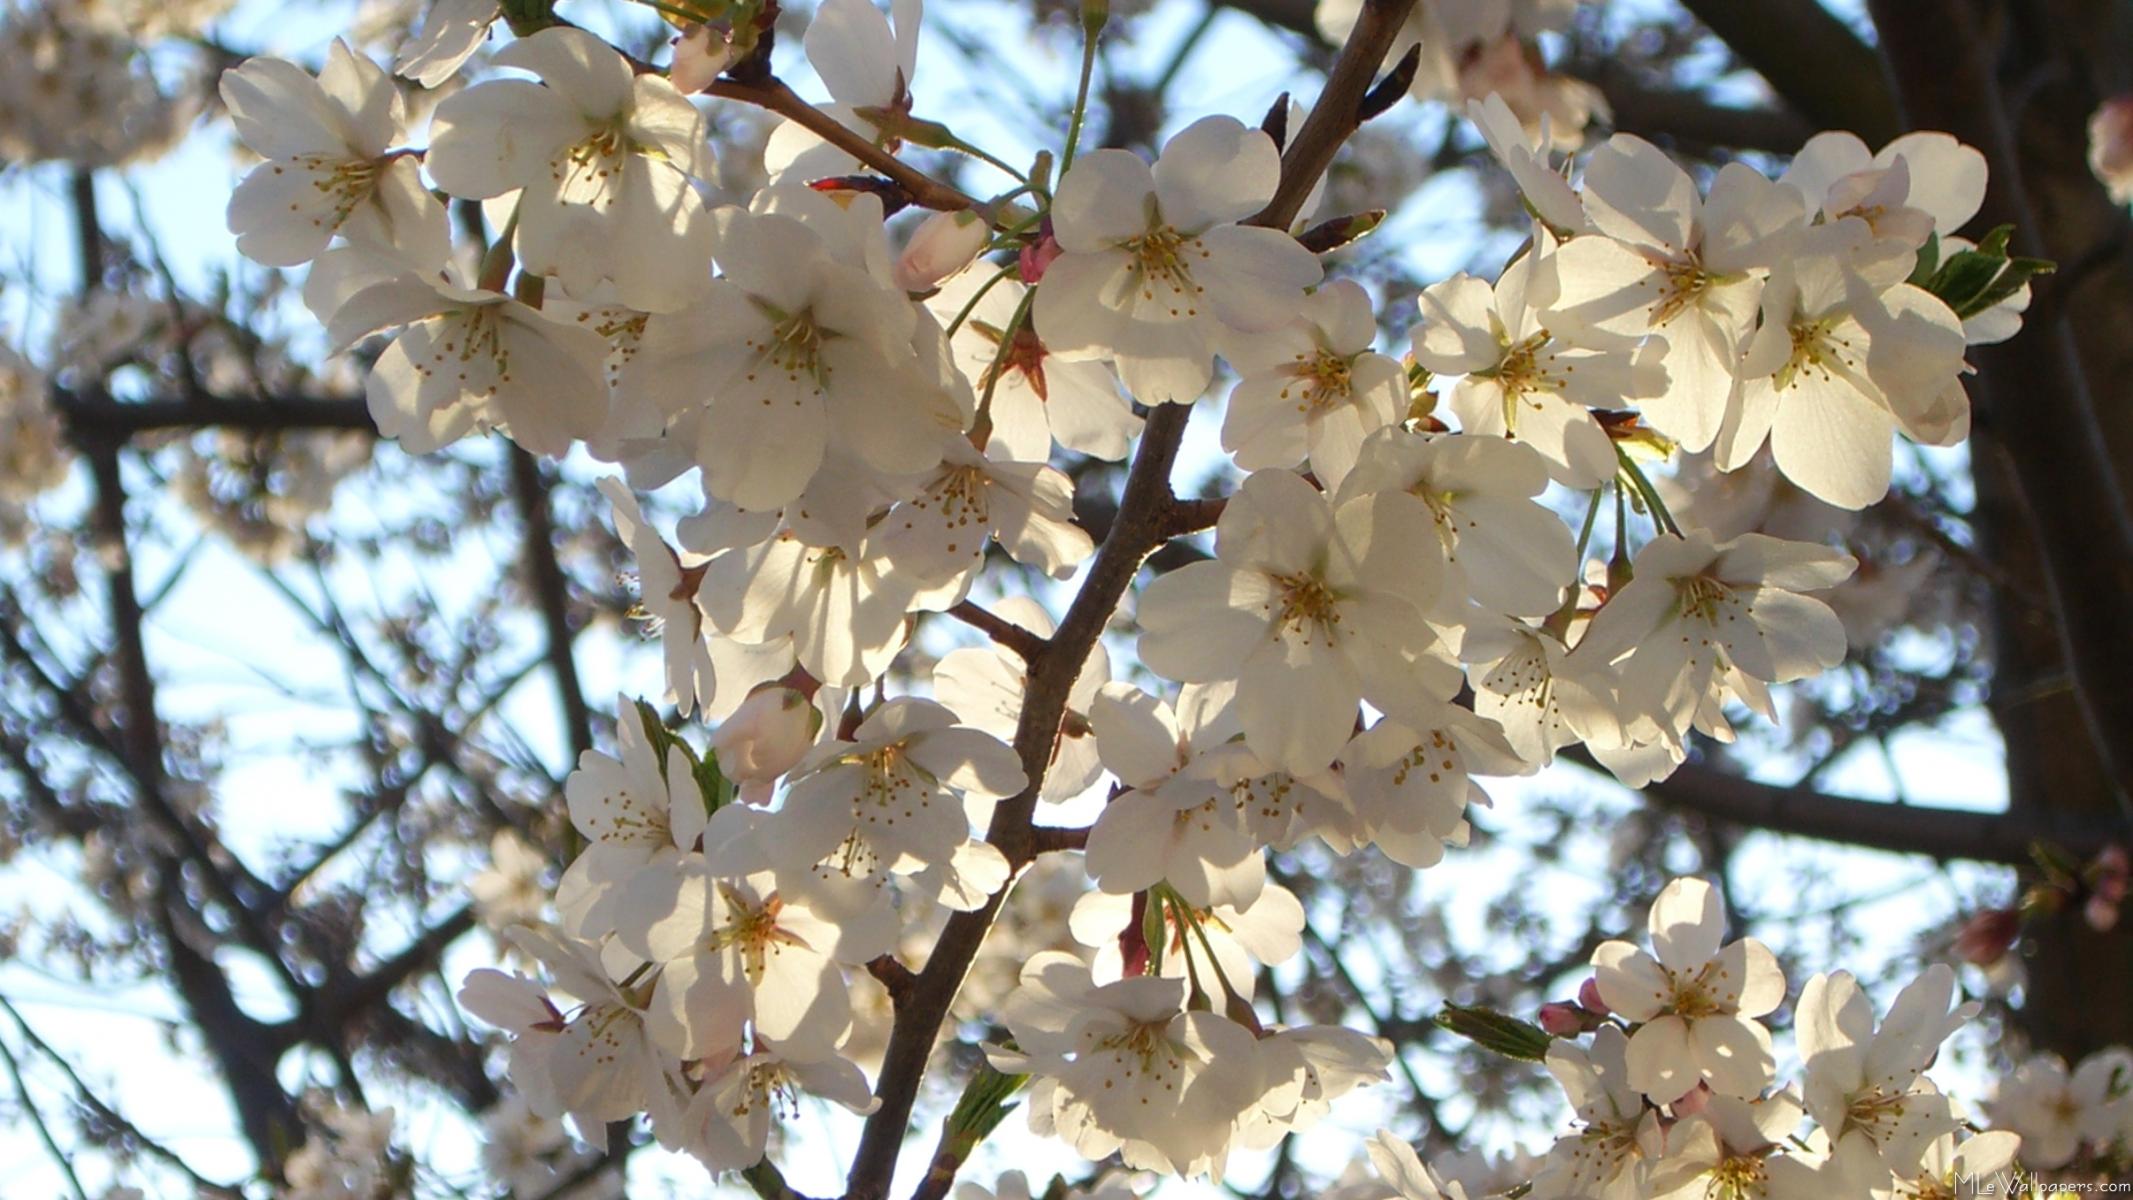 MLeWallpapers.com - Evening Cherry Blossoms I